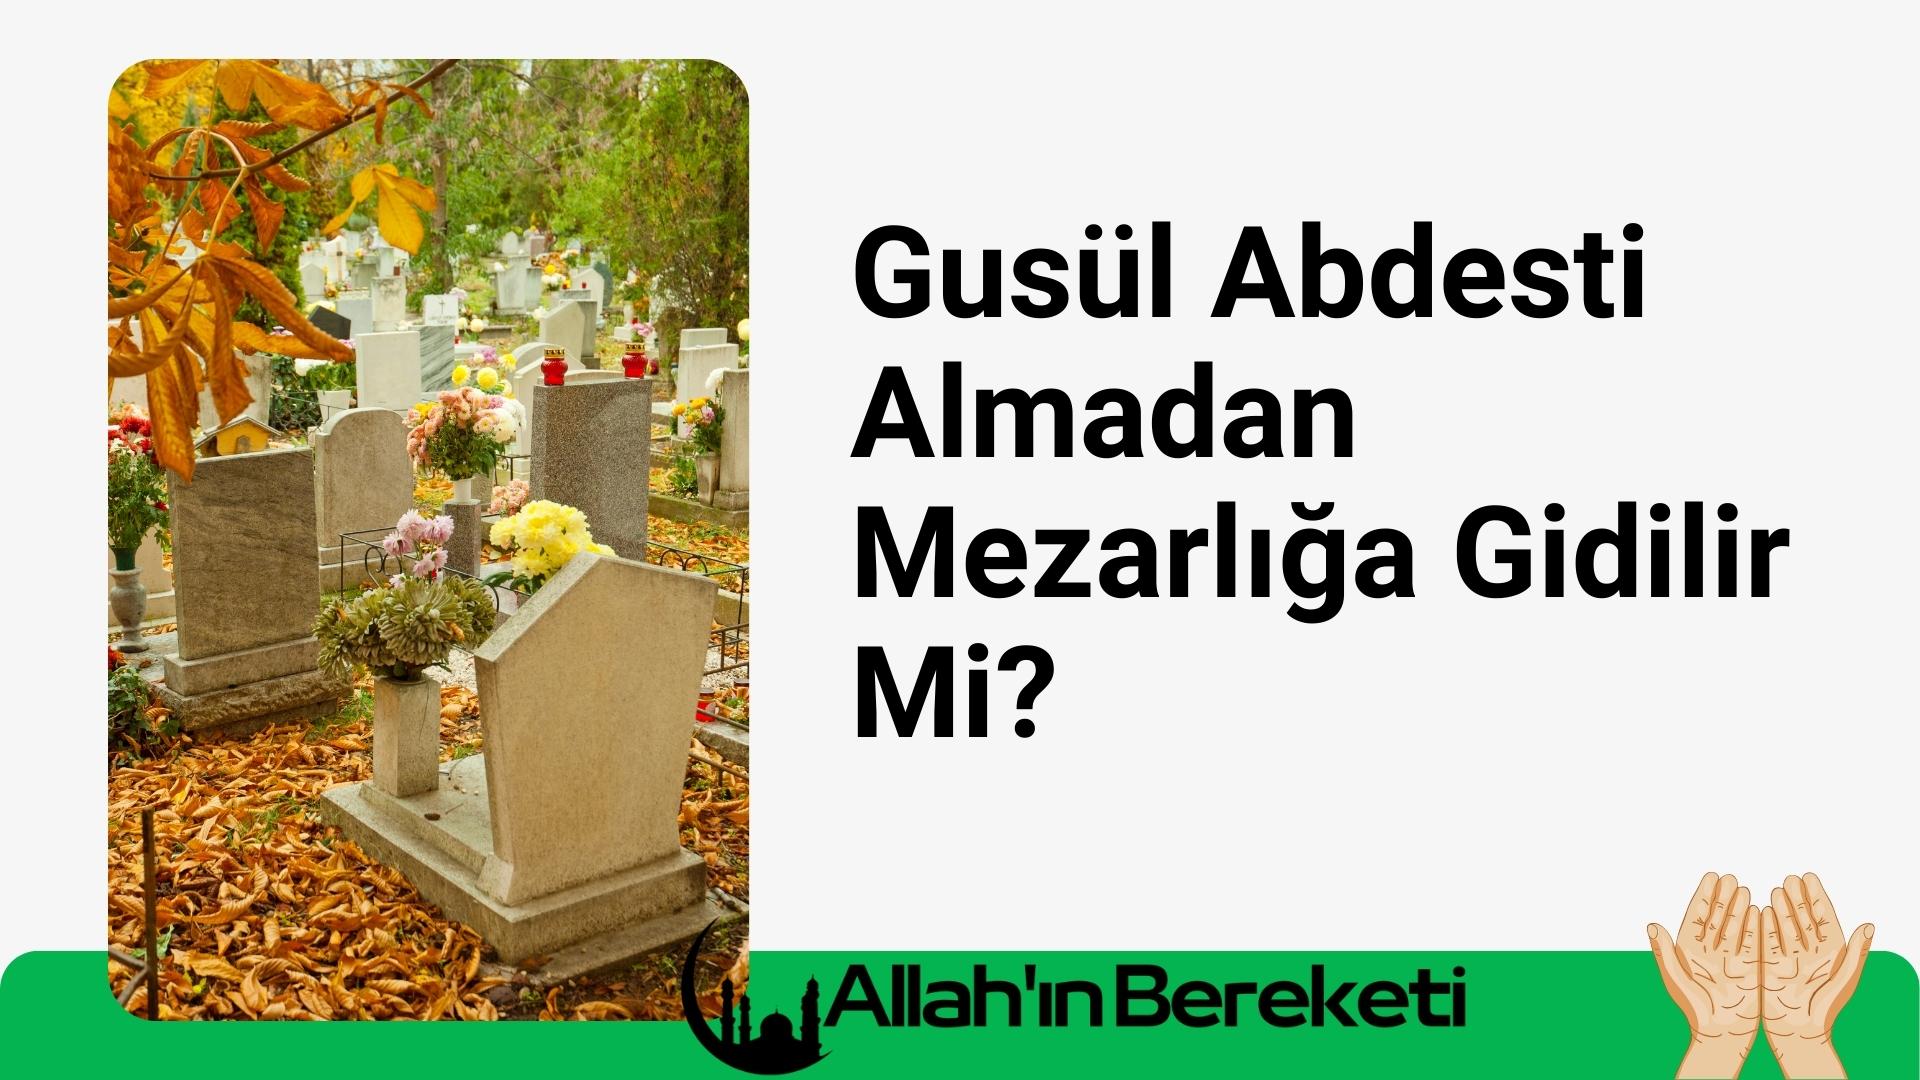 Gusül Abdesti Almadan Mezarlığa Gidilir Mi?